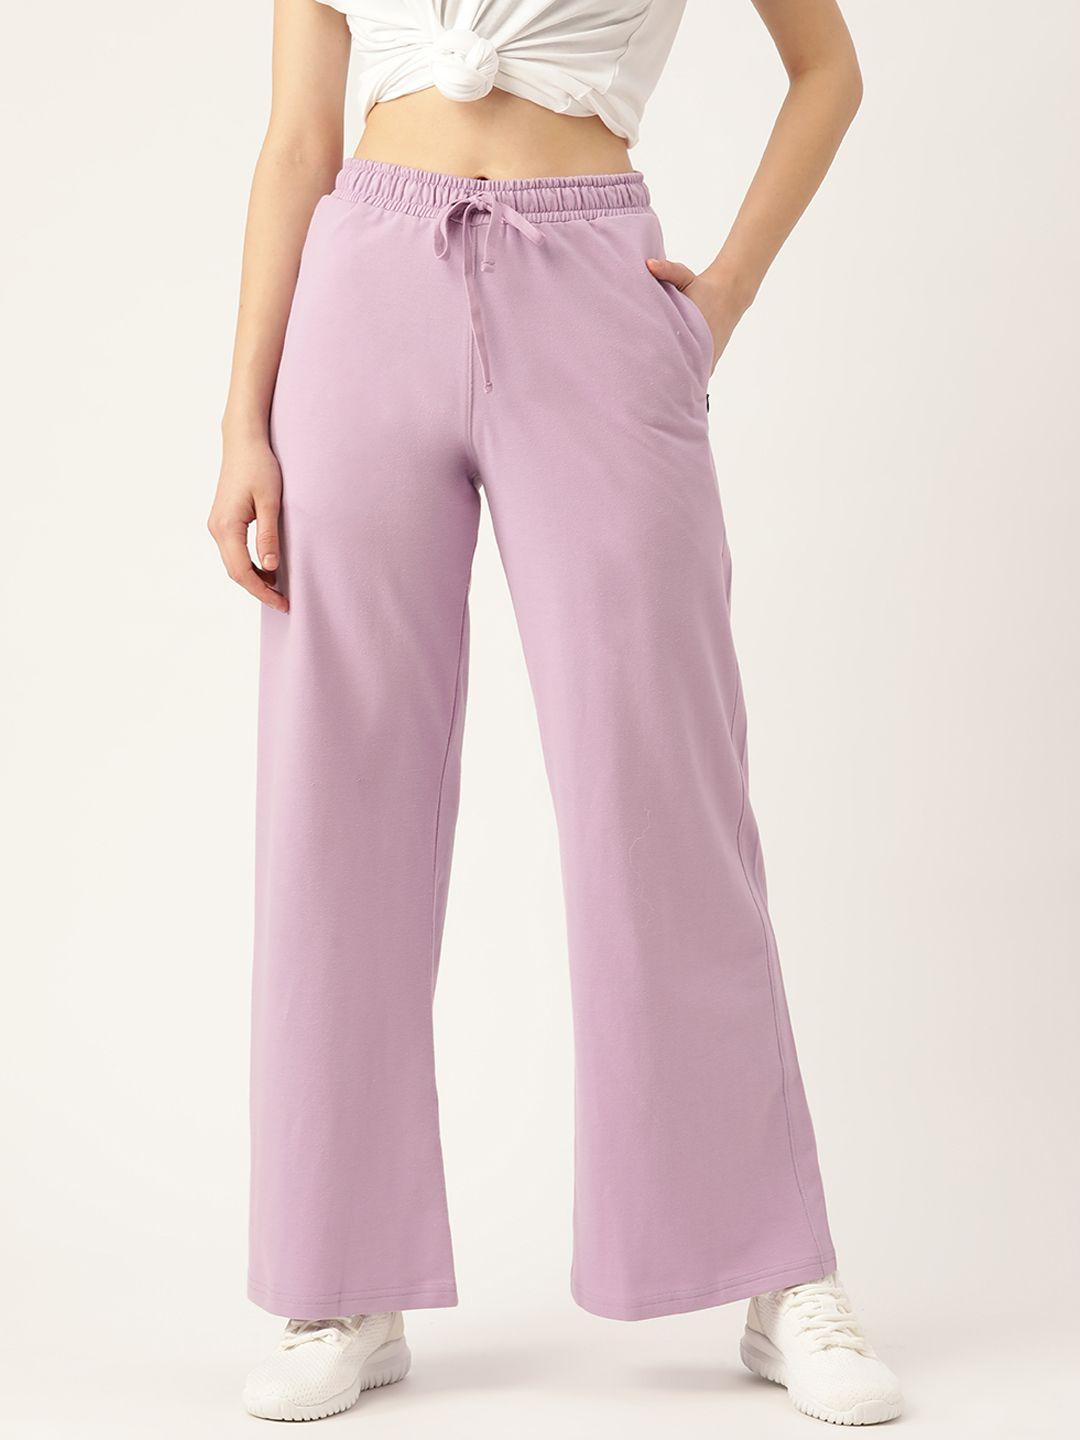 femea women lavender solid cotton wide leg track pants